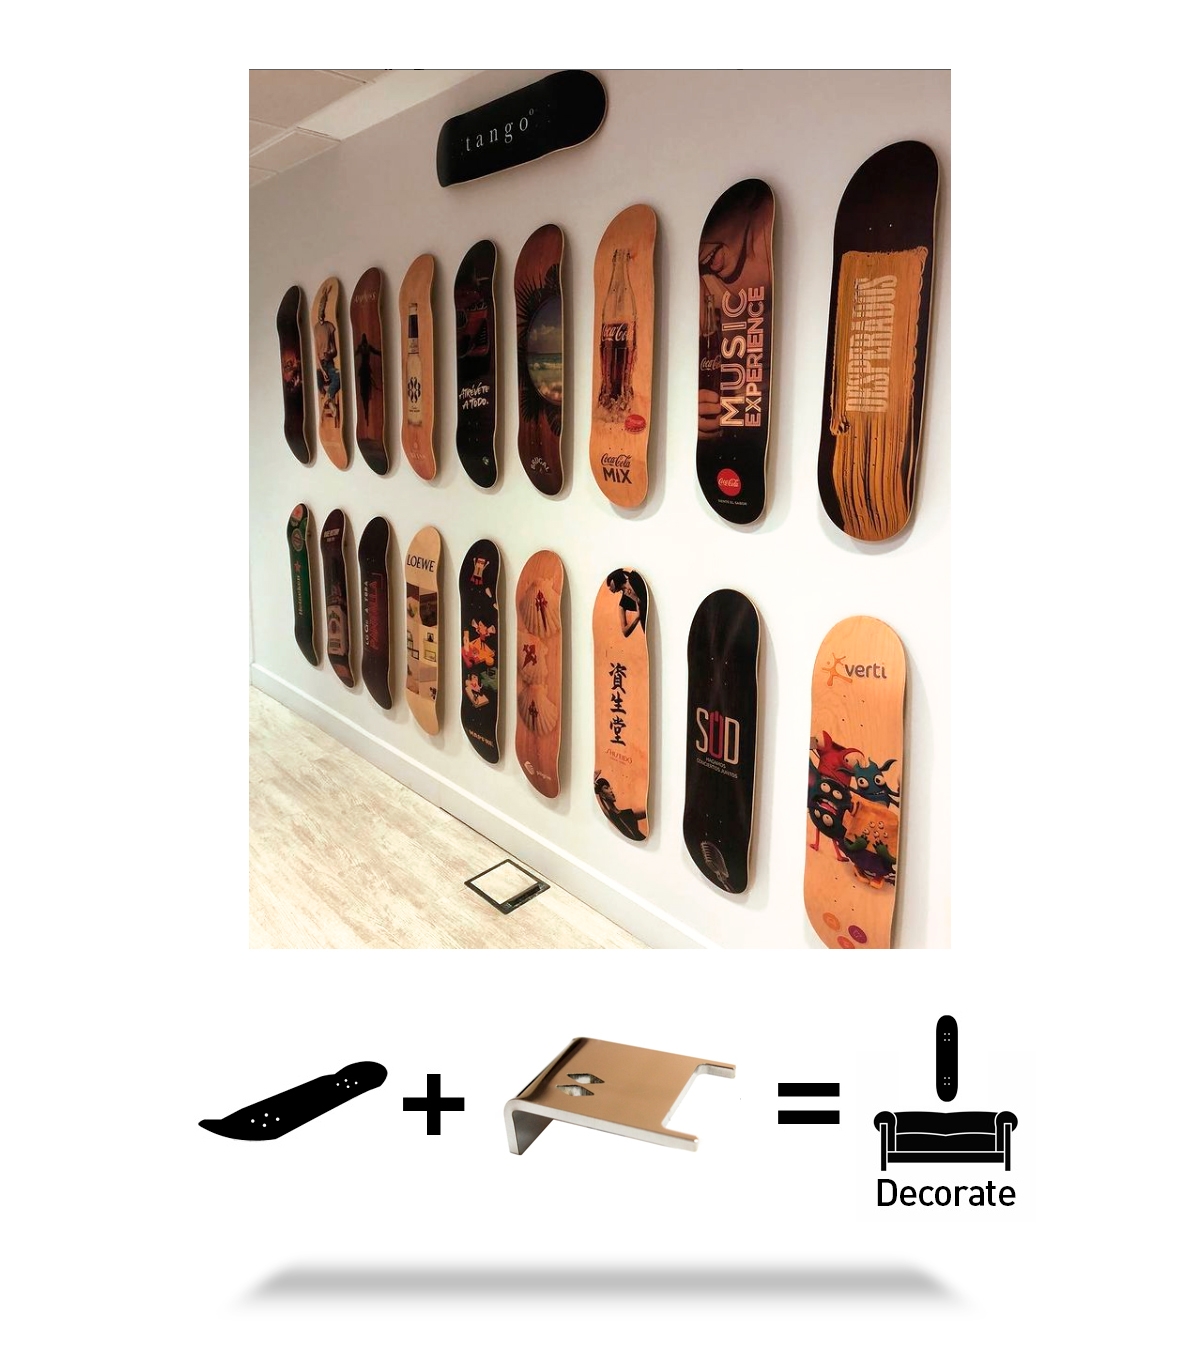 3 Packs Wall Mount Skateboard Holder Skateboard Hanger pour Skateboard Deck  Display And Storage